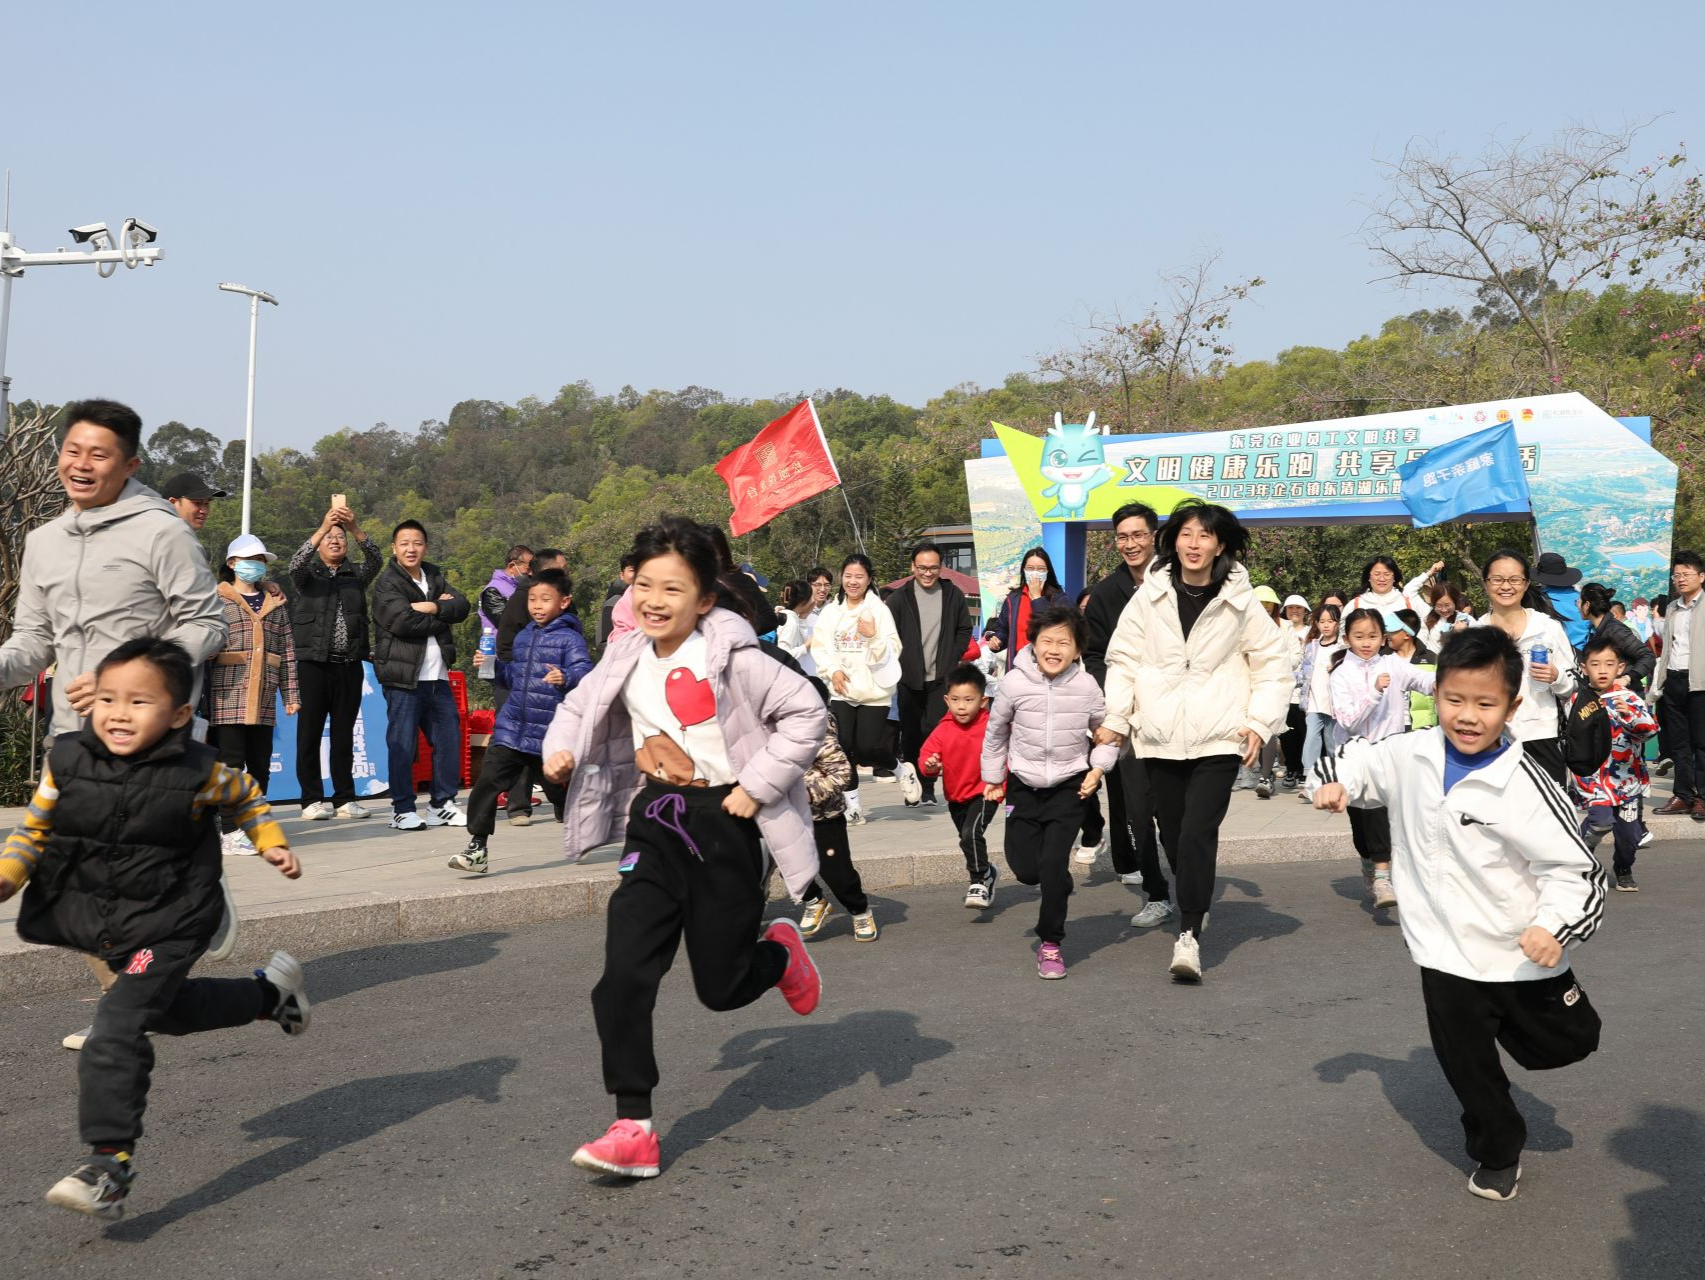 共享健康品质生活 东莞企石举行乐跑活动